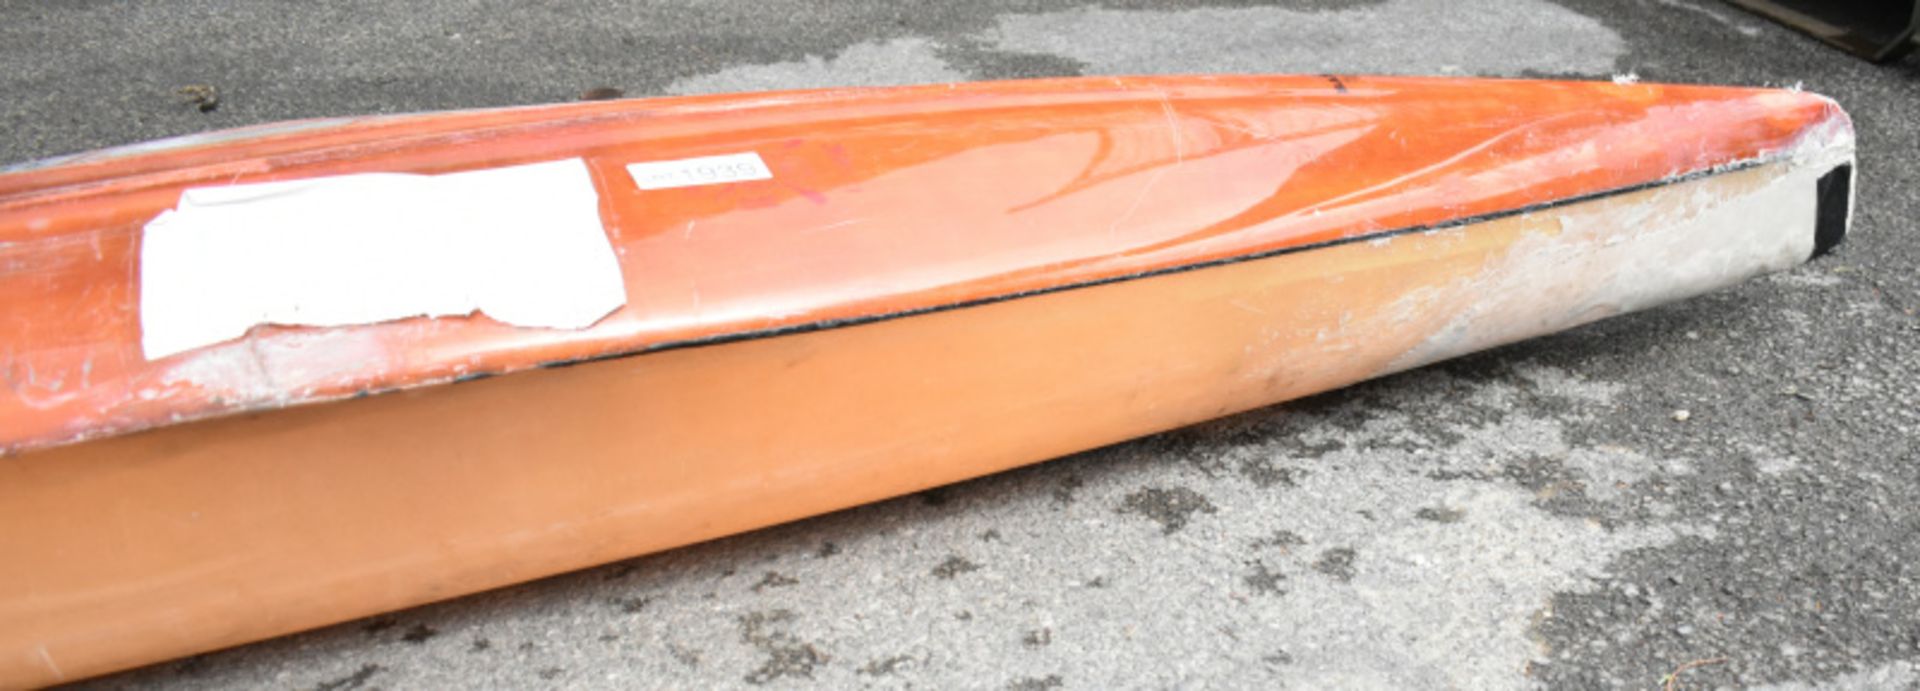 Baron Marlin Kayak - orange - no paddles - Image 5 of 13